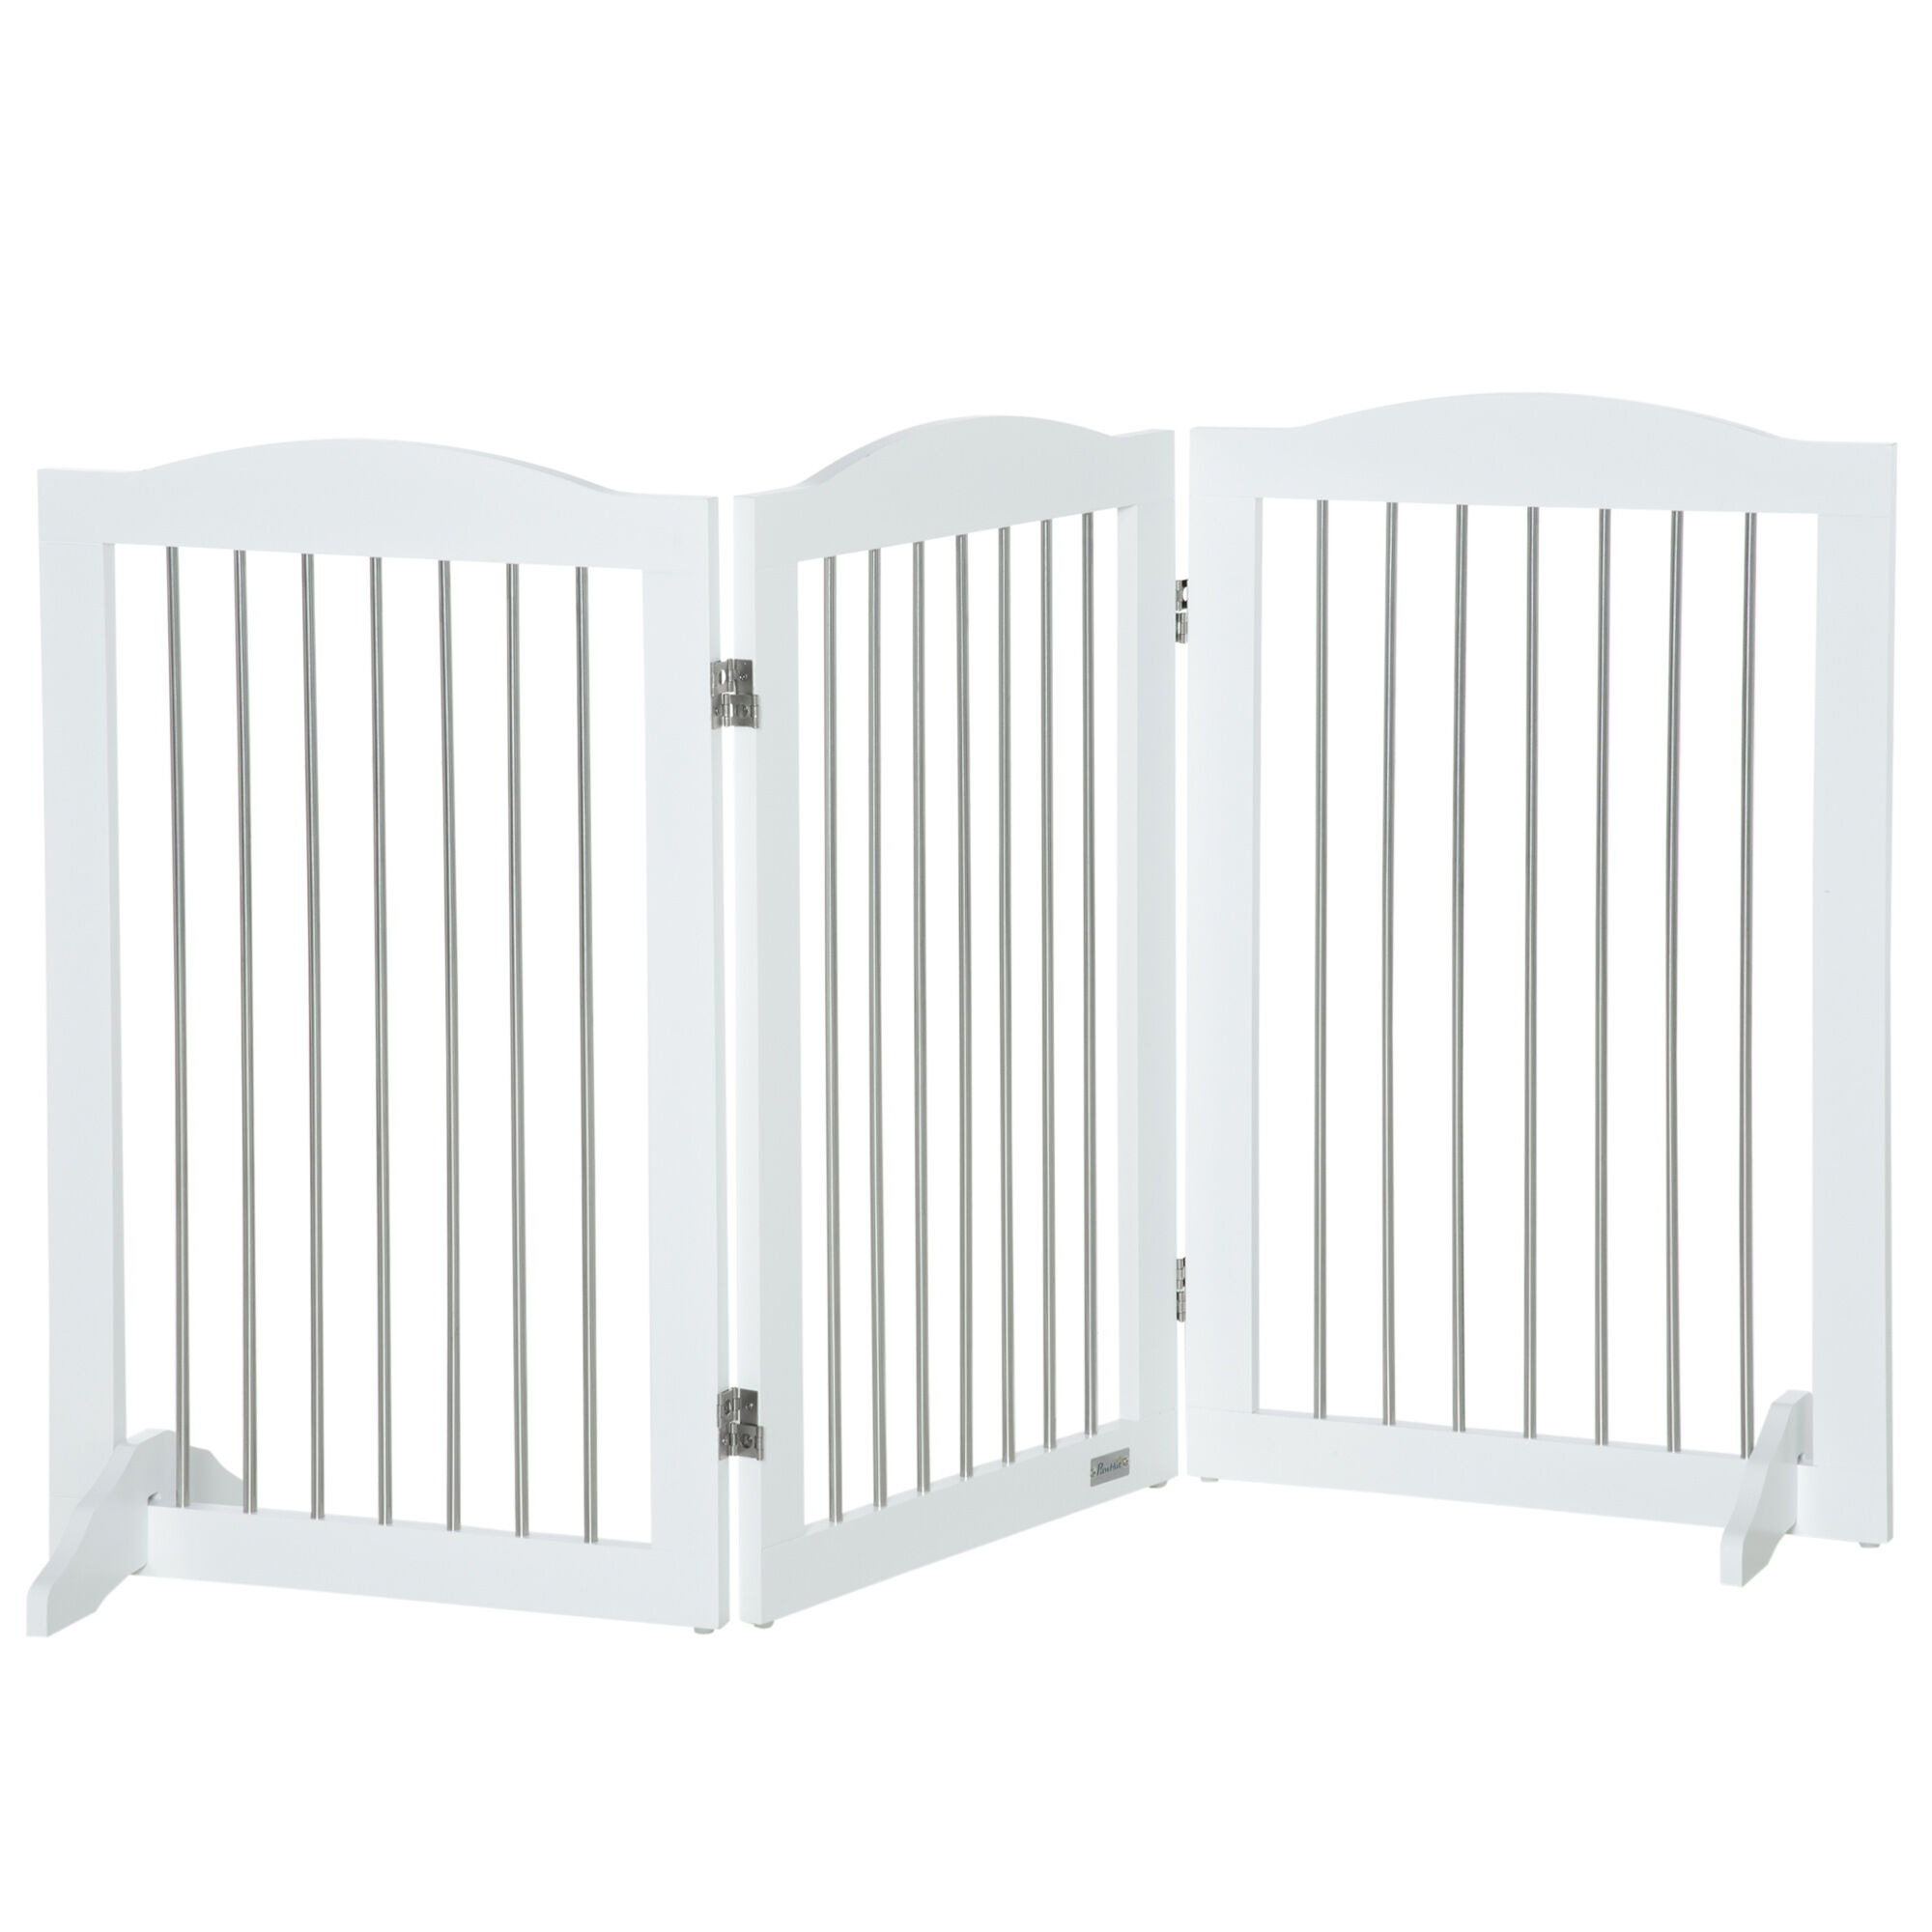 PawHut Barrera de Seguridad para Perros para Escaleras y Puertas Diseño Plegable y Pies de Apoyo 154x30x80 cm Blanco